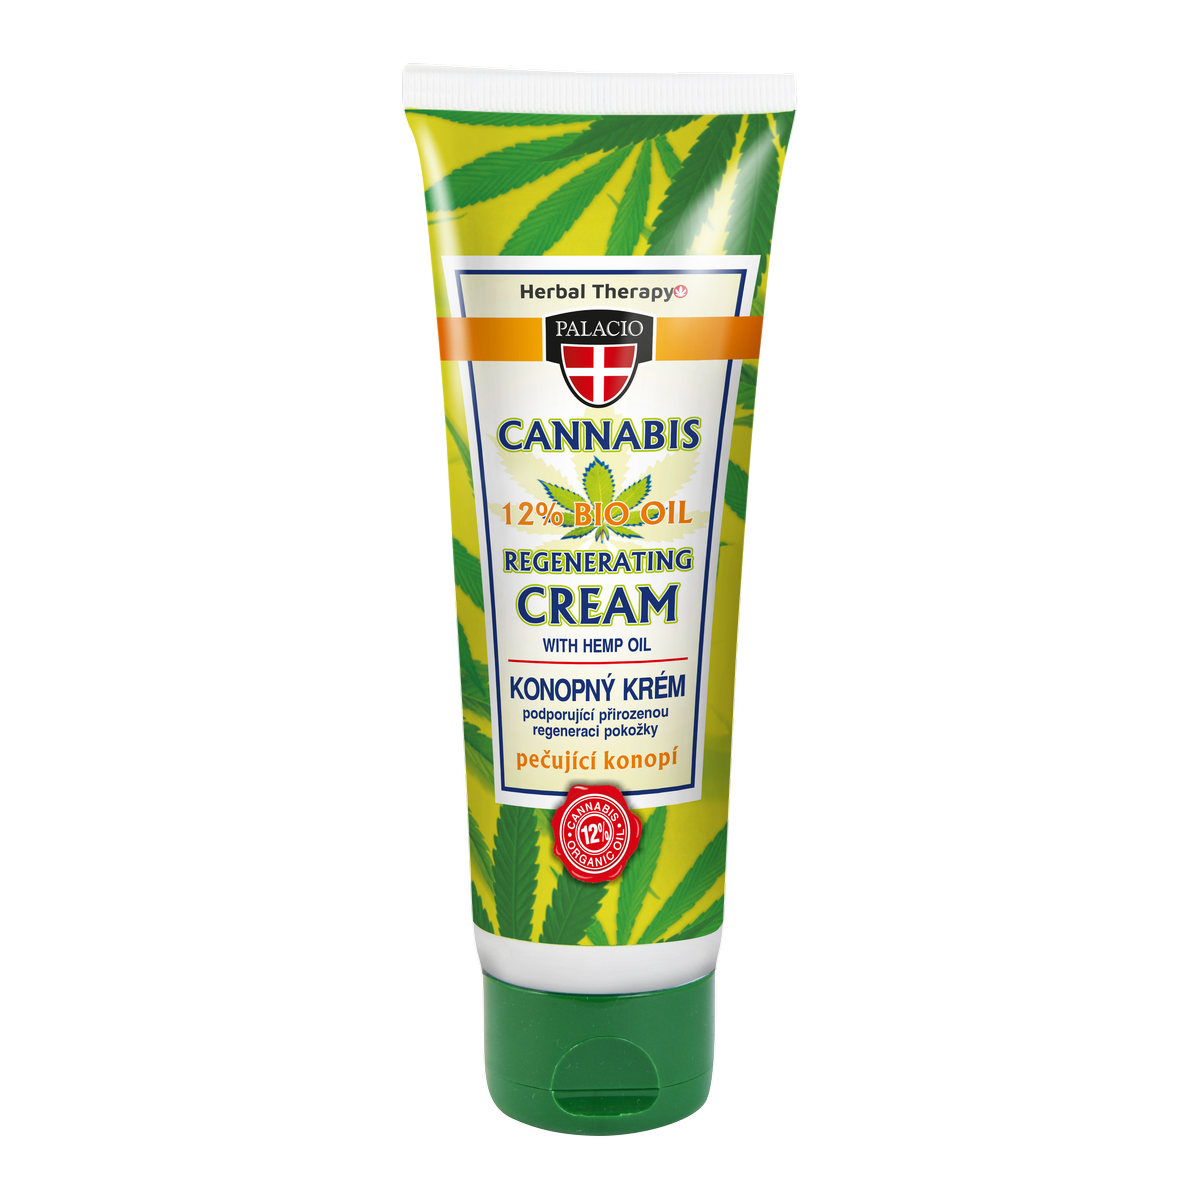 CANNABIS Hand Cream 125ml P0420 ENG WEB 108